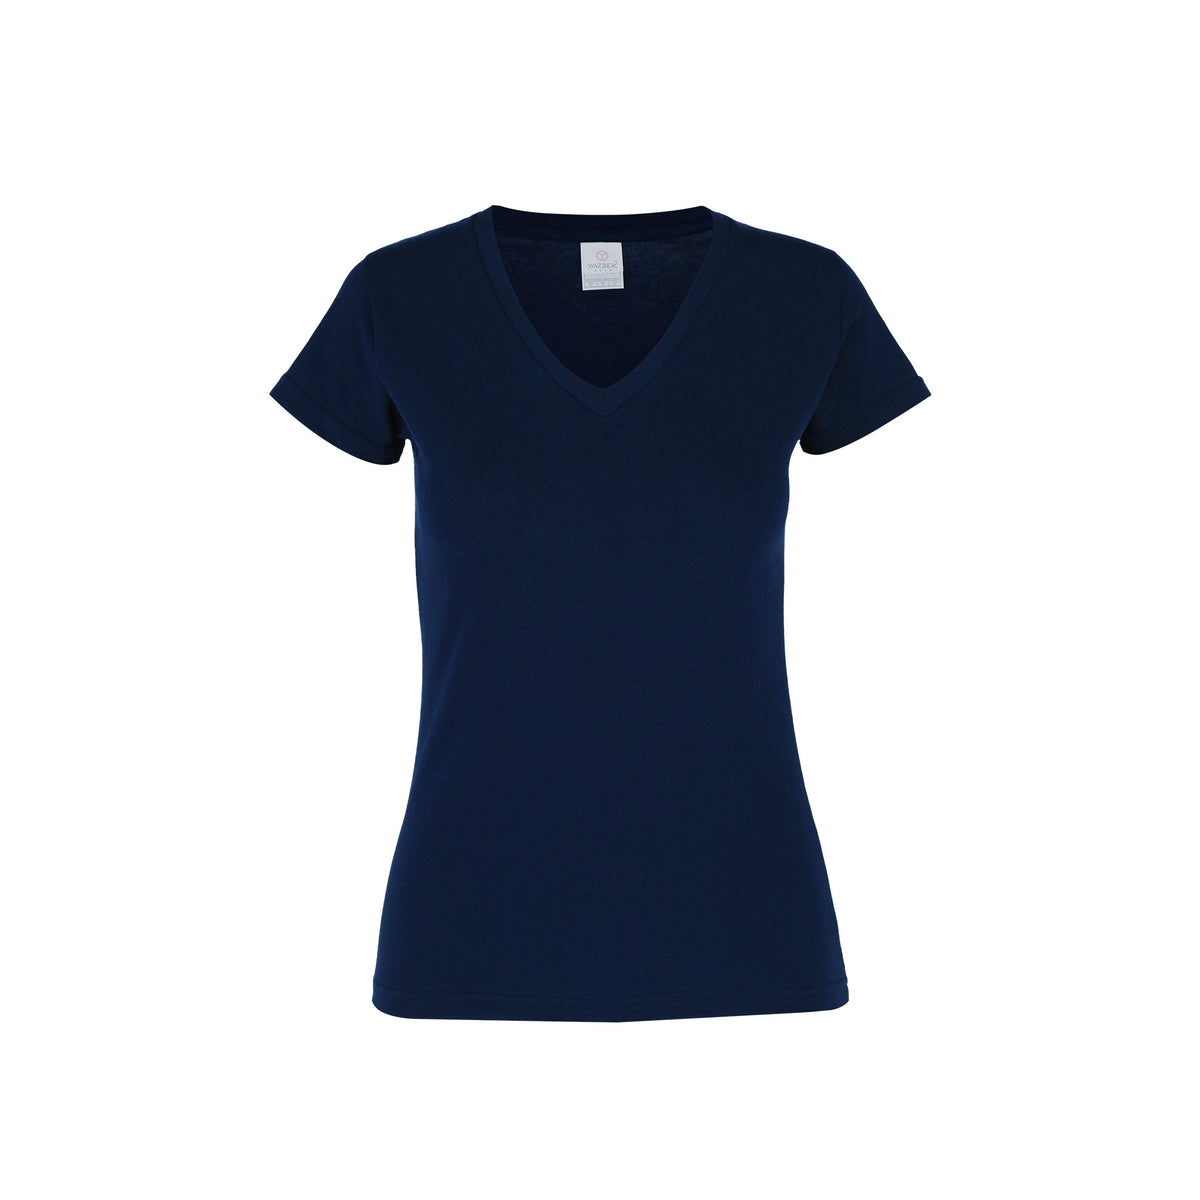 Women’s V-Neck Short Sleeve Silhouette T-Shirt (Navy) – Yazbek USA Mint